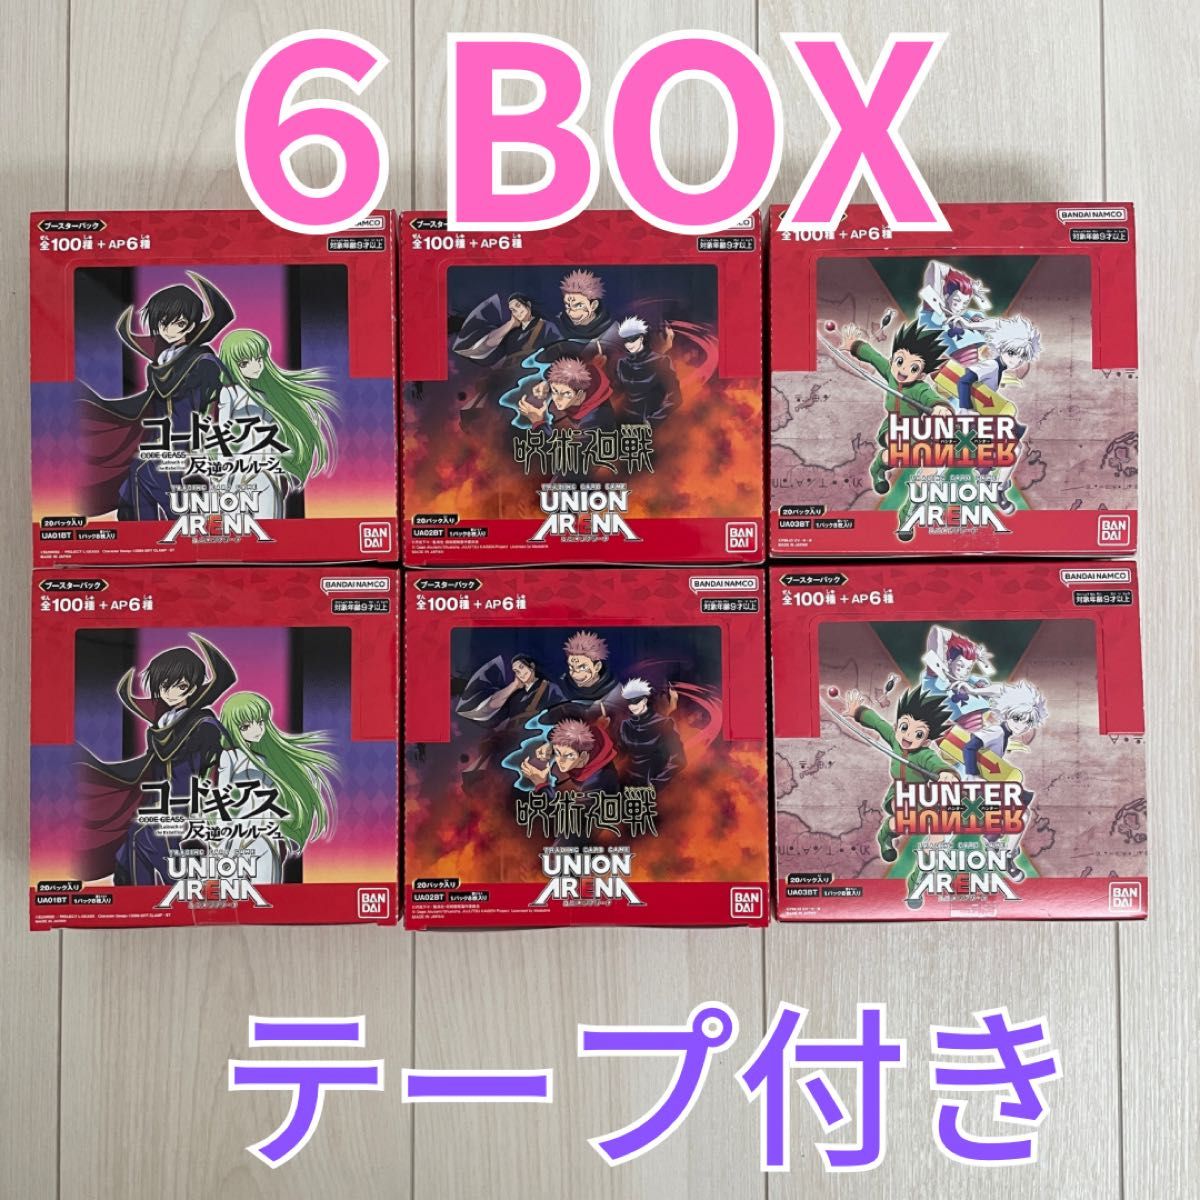 ユニオンアリーナ6BOX コードギアス呪術廻戦HUNTER×HUNTERカードゲーム3種各2BOX